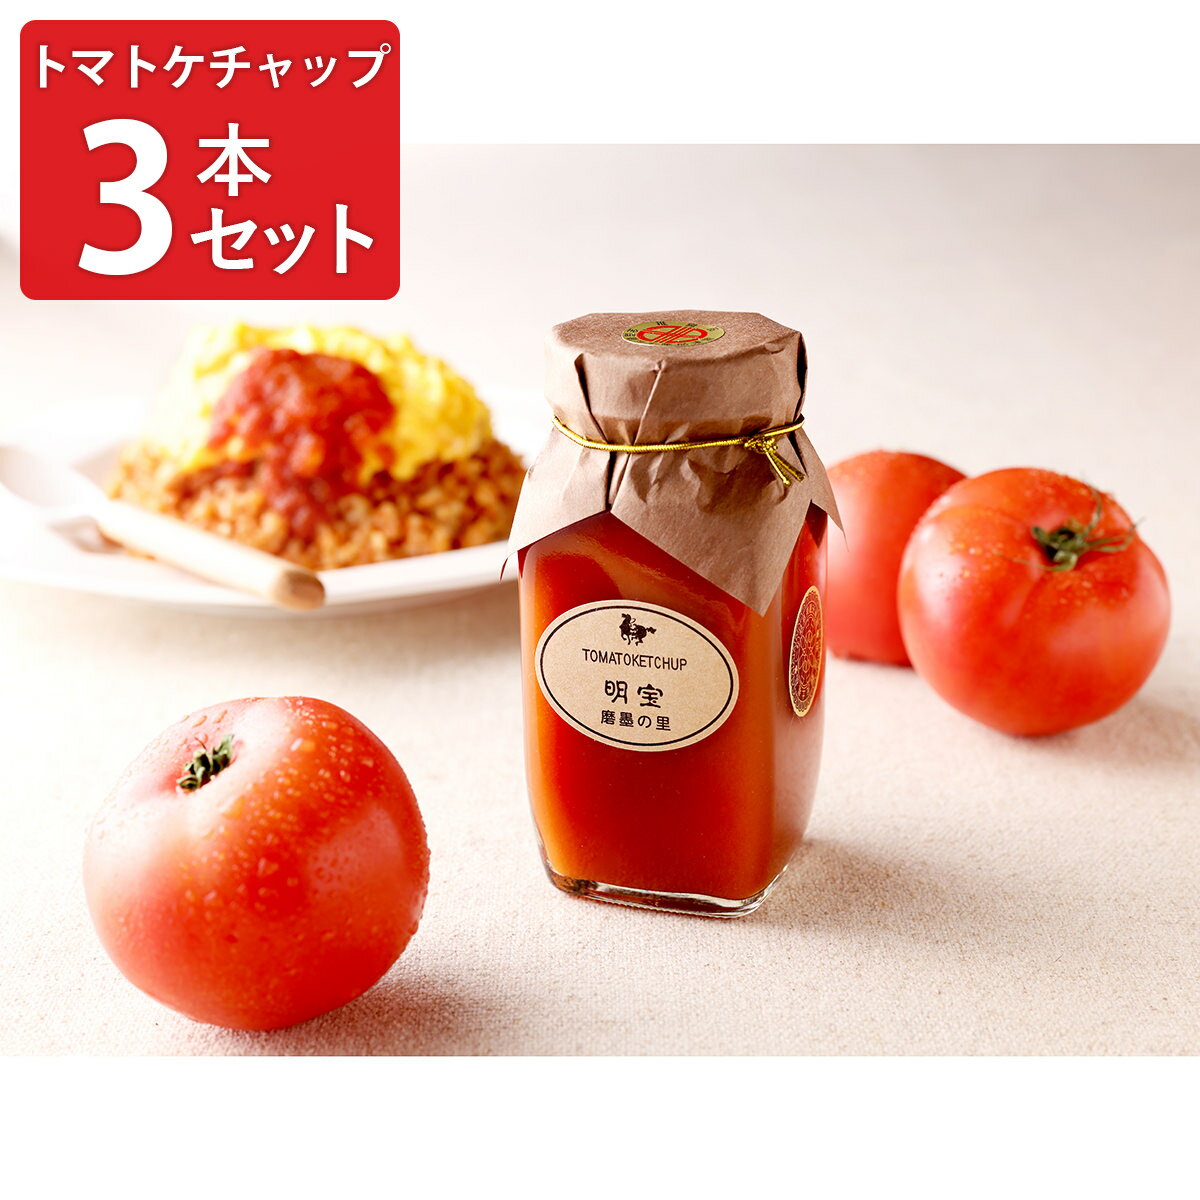 ハーティーミール トマトケチャップ 300g　HEARTY MEAL 桃太郎トマト 添加物不使用 なめらか 完熟トマト 瓶入りケチャップ